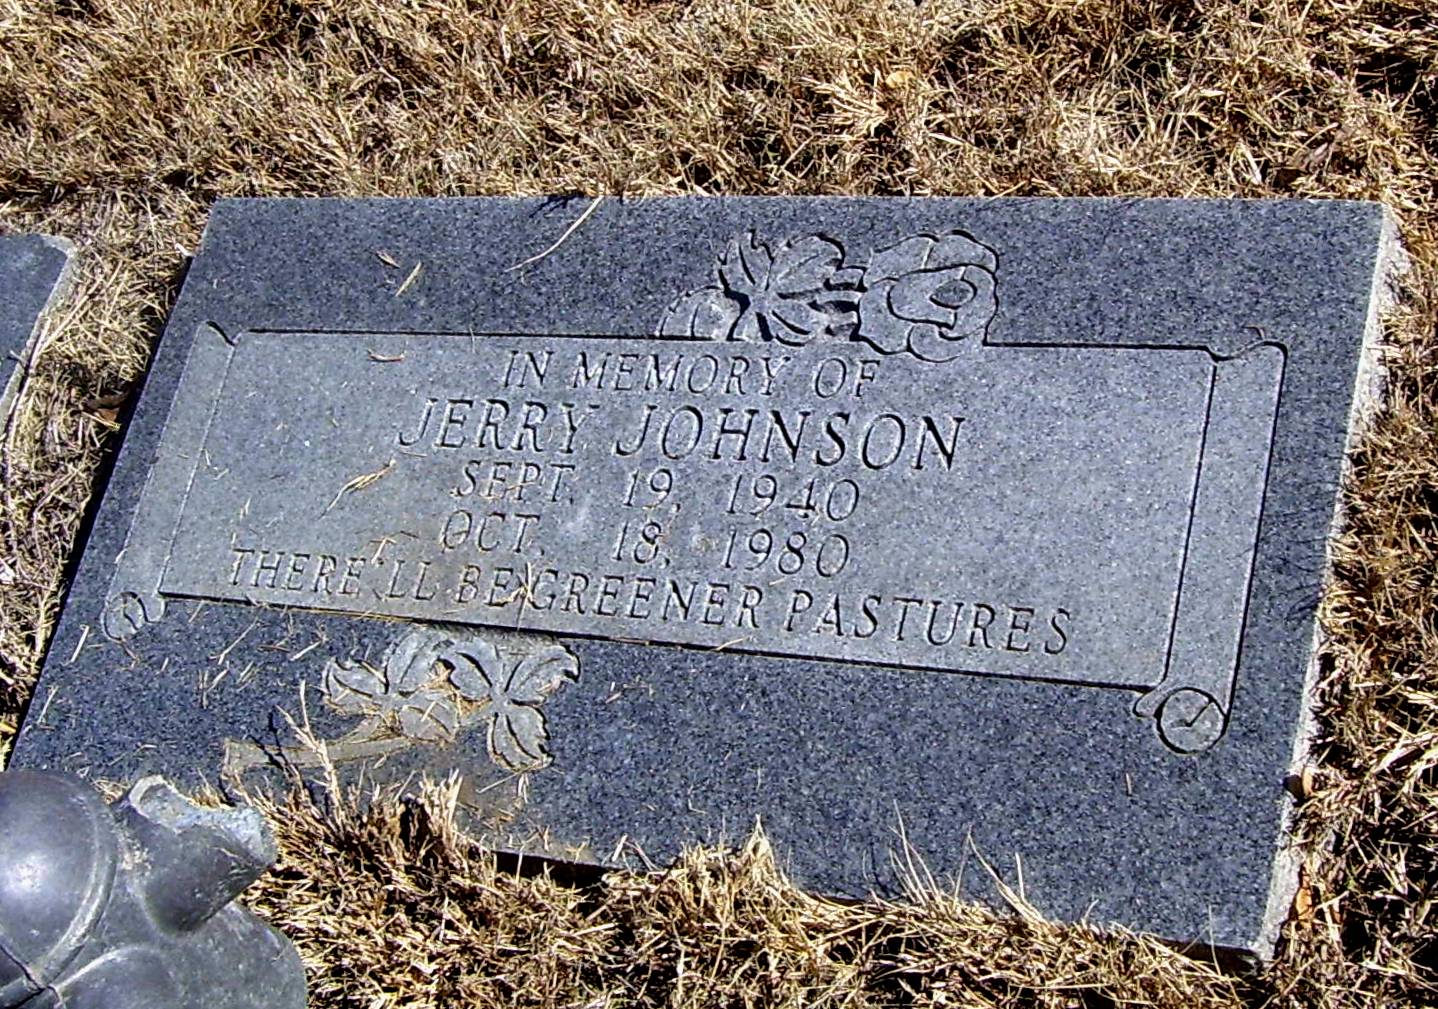 aa-jerry-johnson-gravestone.jpg